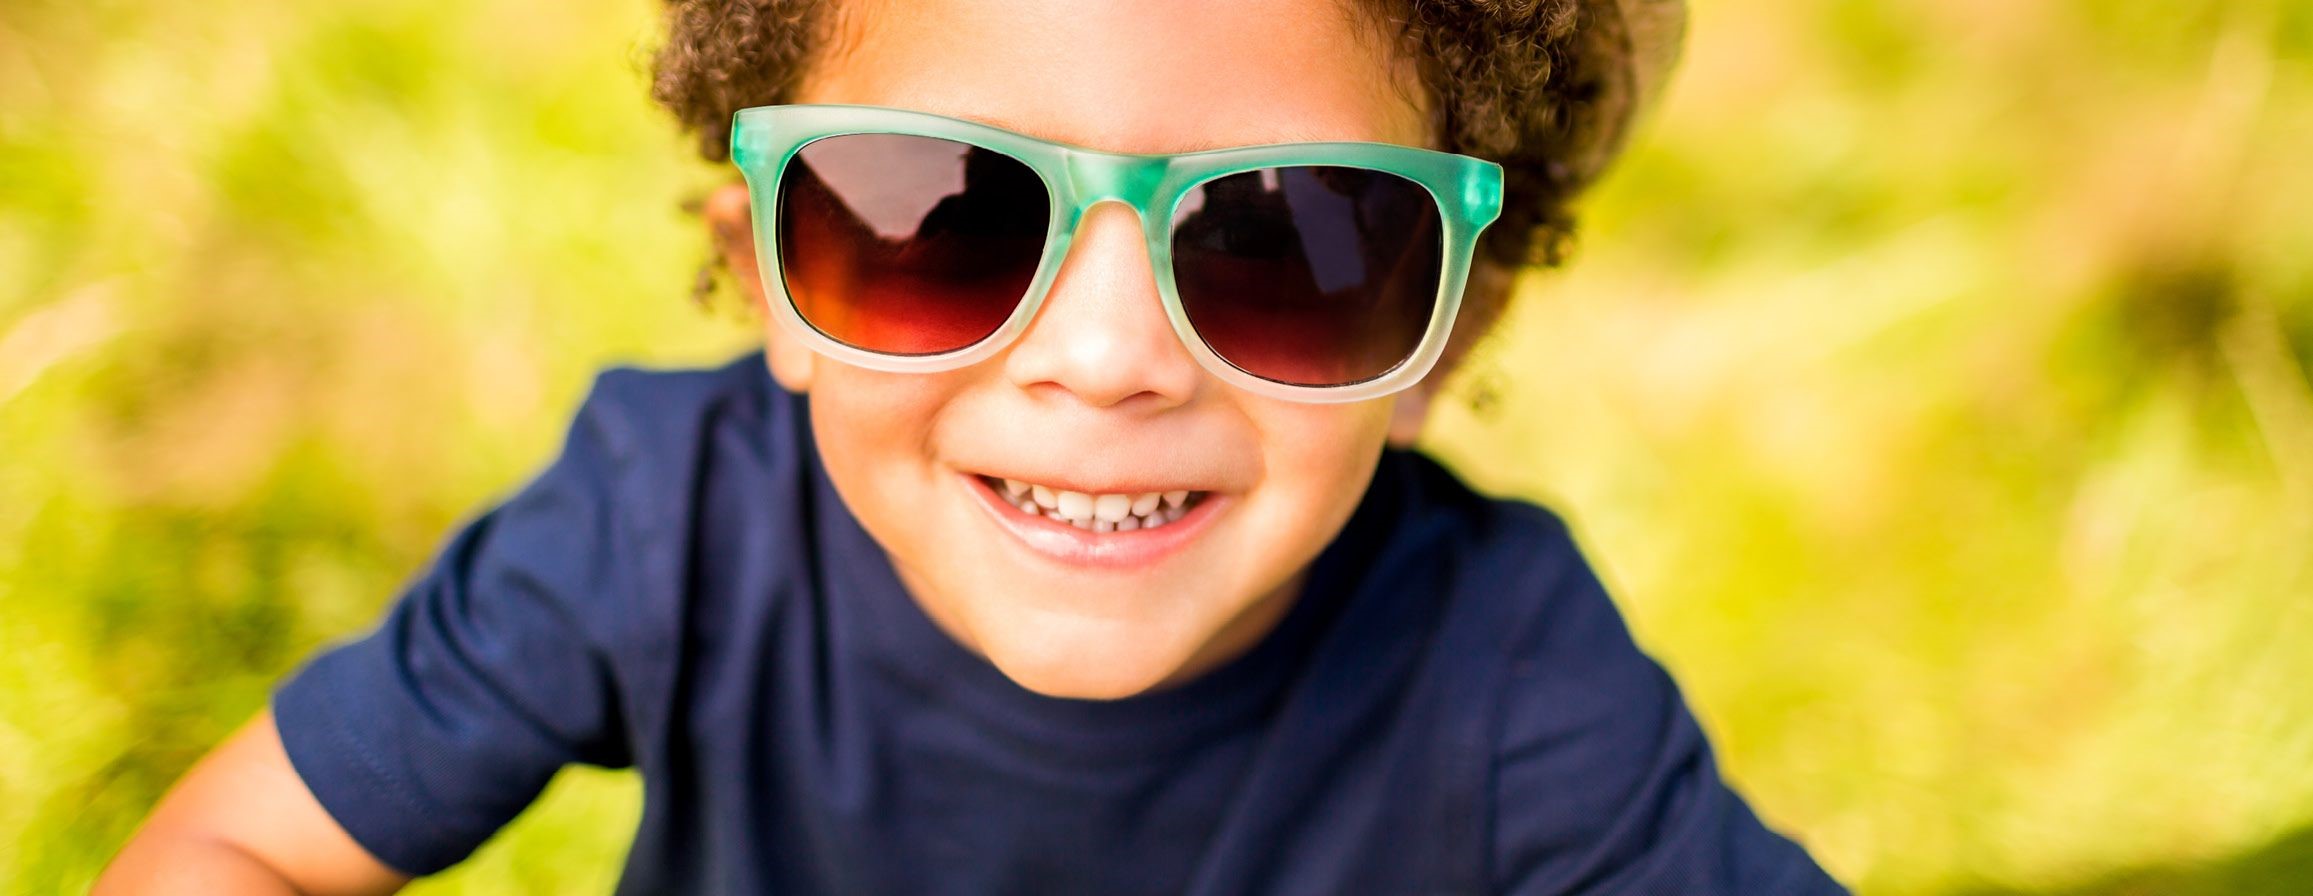 حفاظت از بینایی کودک - مواد غذایی موثر